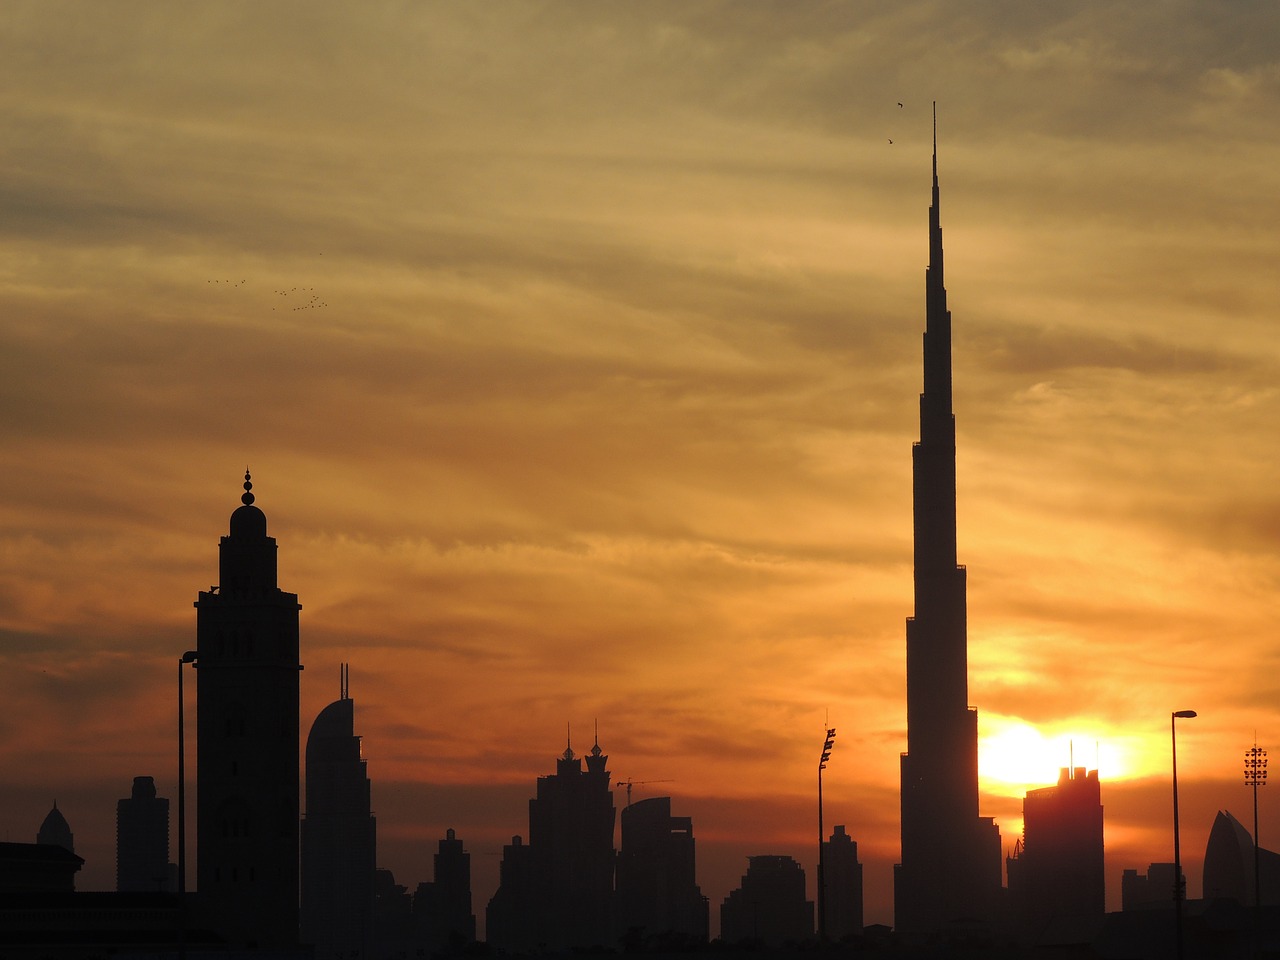 burj khalifa at the top reach out free photo